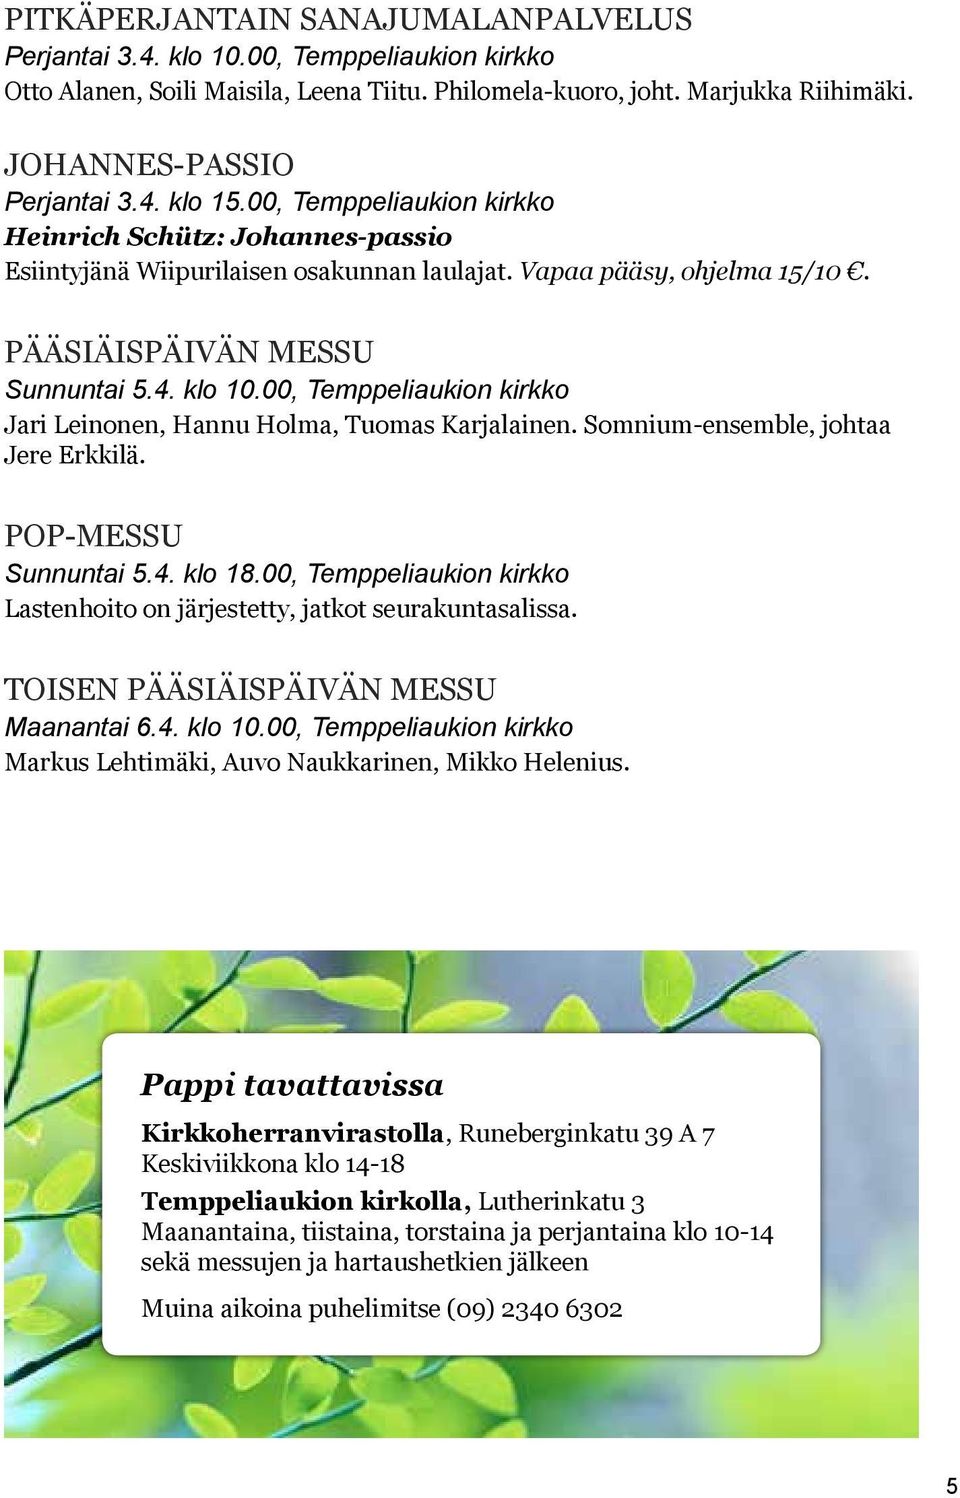 00, Temppeliaukion kirkko Jari Leinonen, Hannu Holma, Tuomas Karjalainen. Somnium-ensemble, johtaa Jere Erkkilä. Pop-messu Sunnuntai 5.4. klo 18.